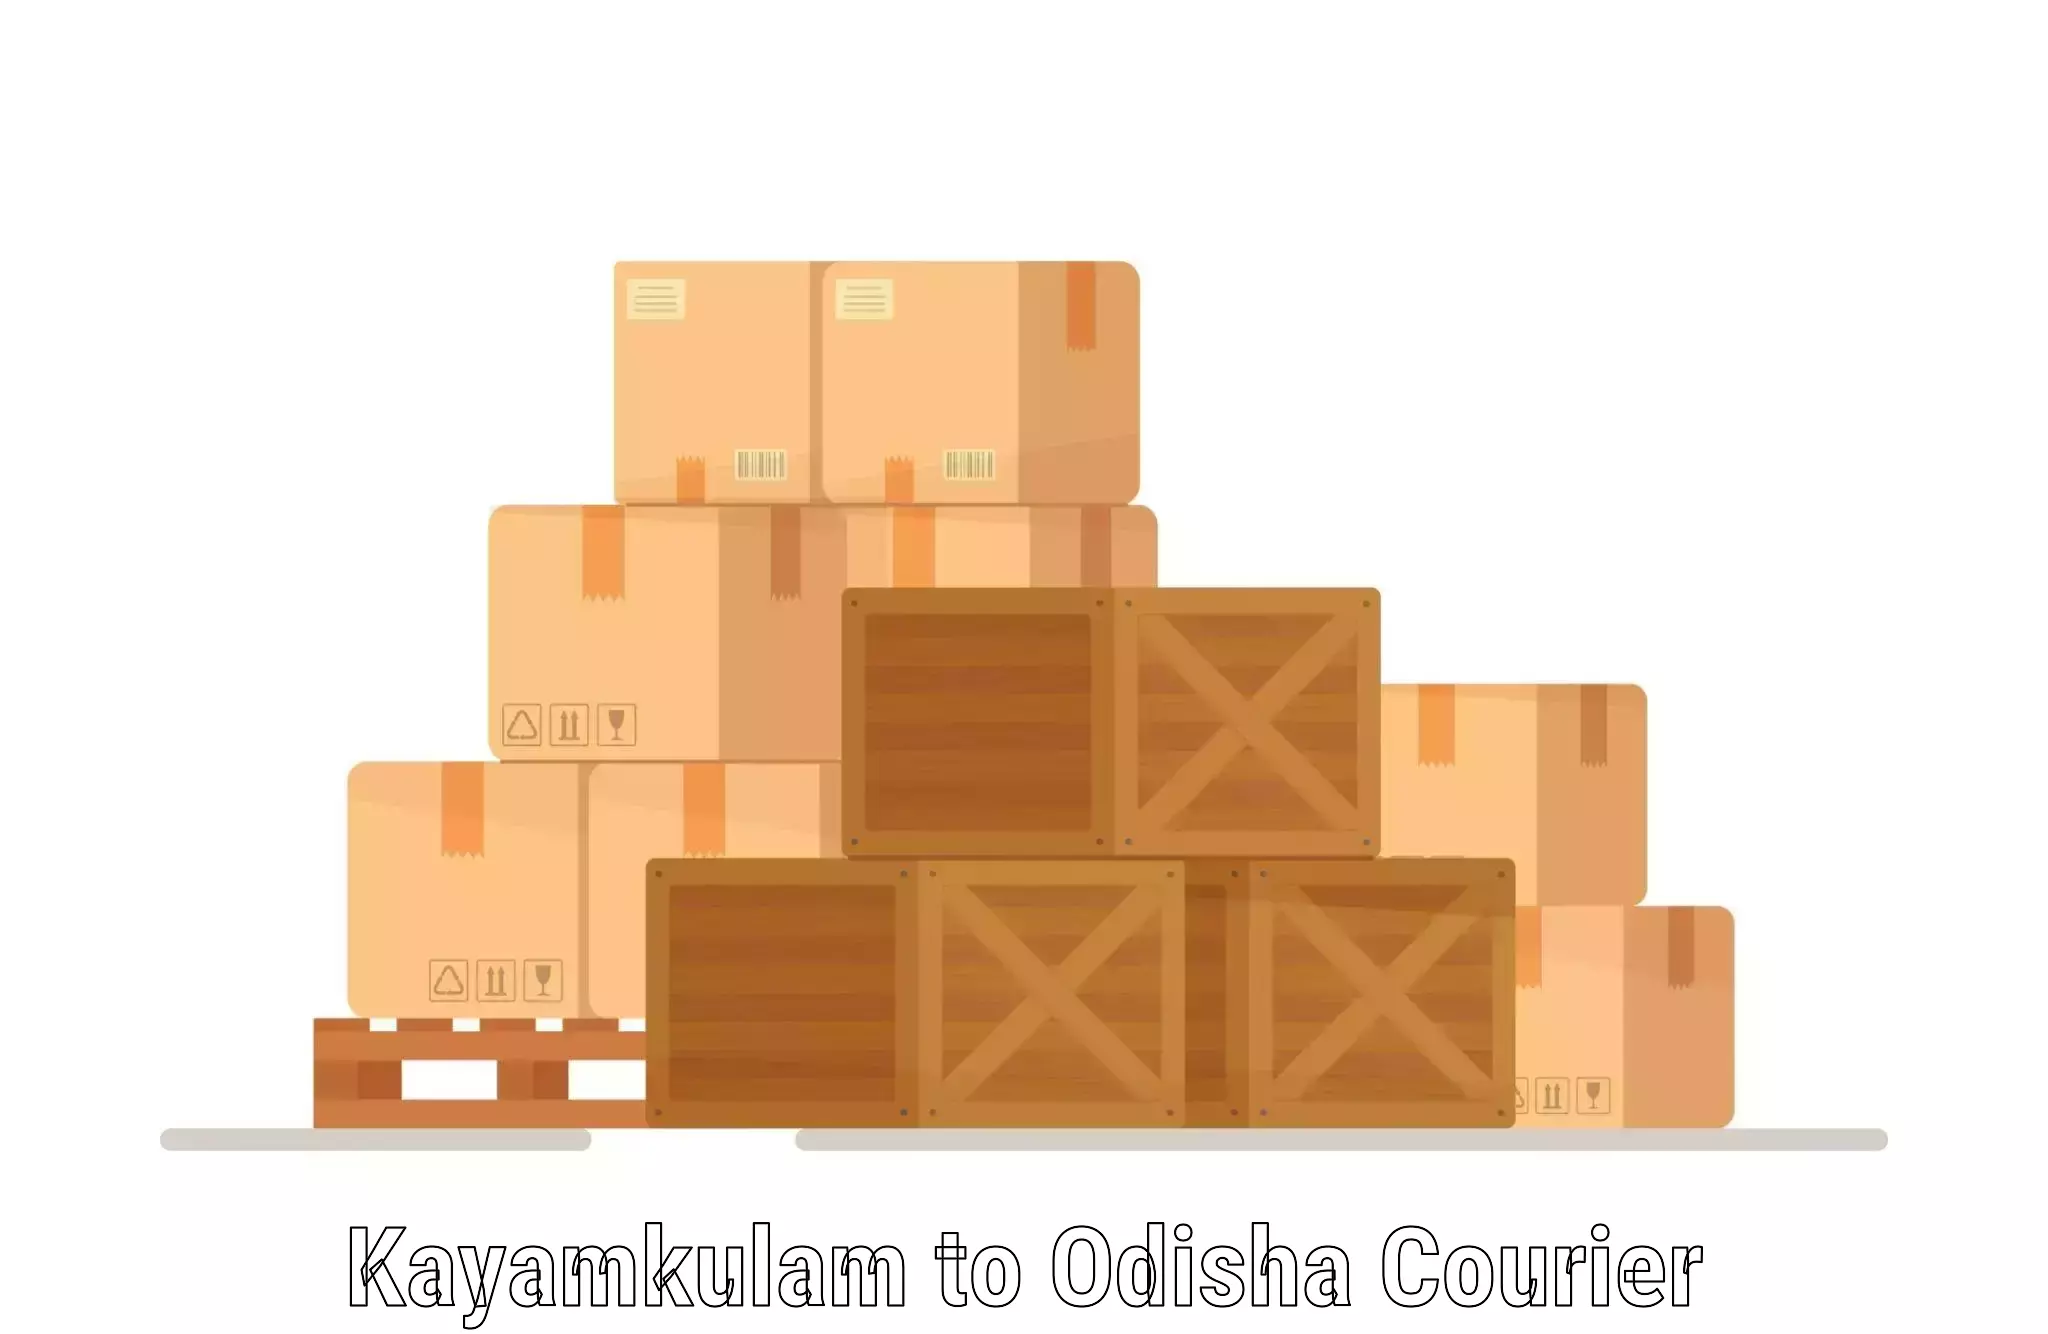 Customer-centric shipping Kayamkulam to Kamakhyanagar